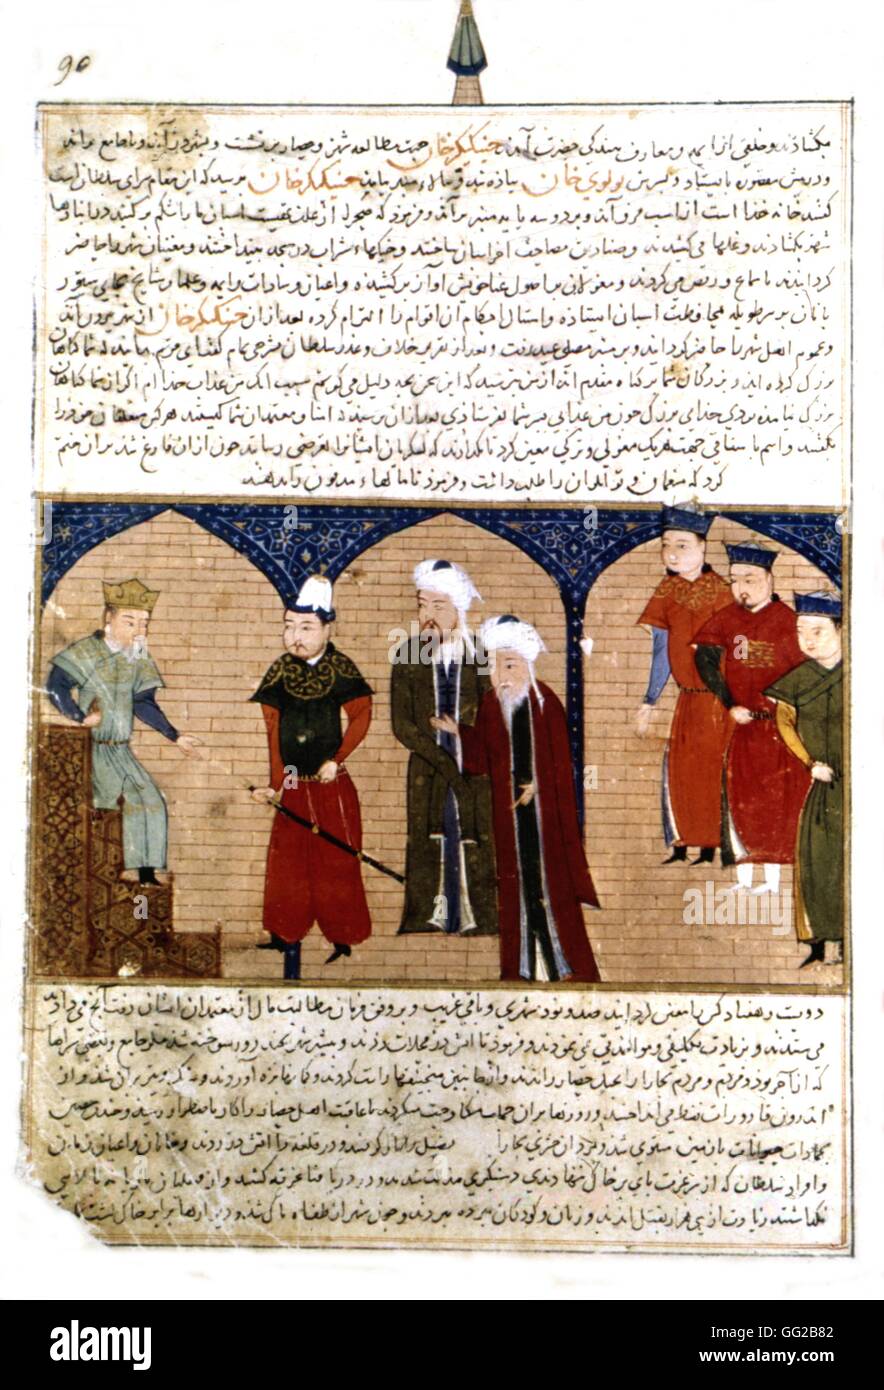 Persische Handschrift mit 106 Bildern illustriert: "Jami'al Tawarikh" von Rachid Ad-Dîn (Geschichte der Mongolen). Dschingis Khan, auf dem Thron, umgeben von den Mongolen. 14. Jahrhundert persische Schule Stockfoto